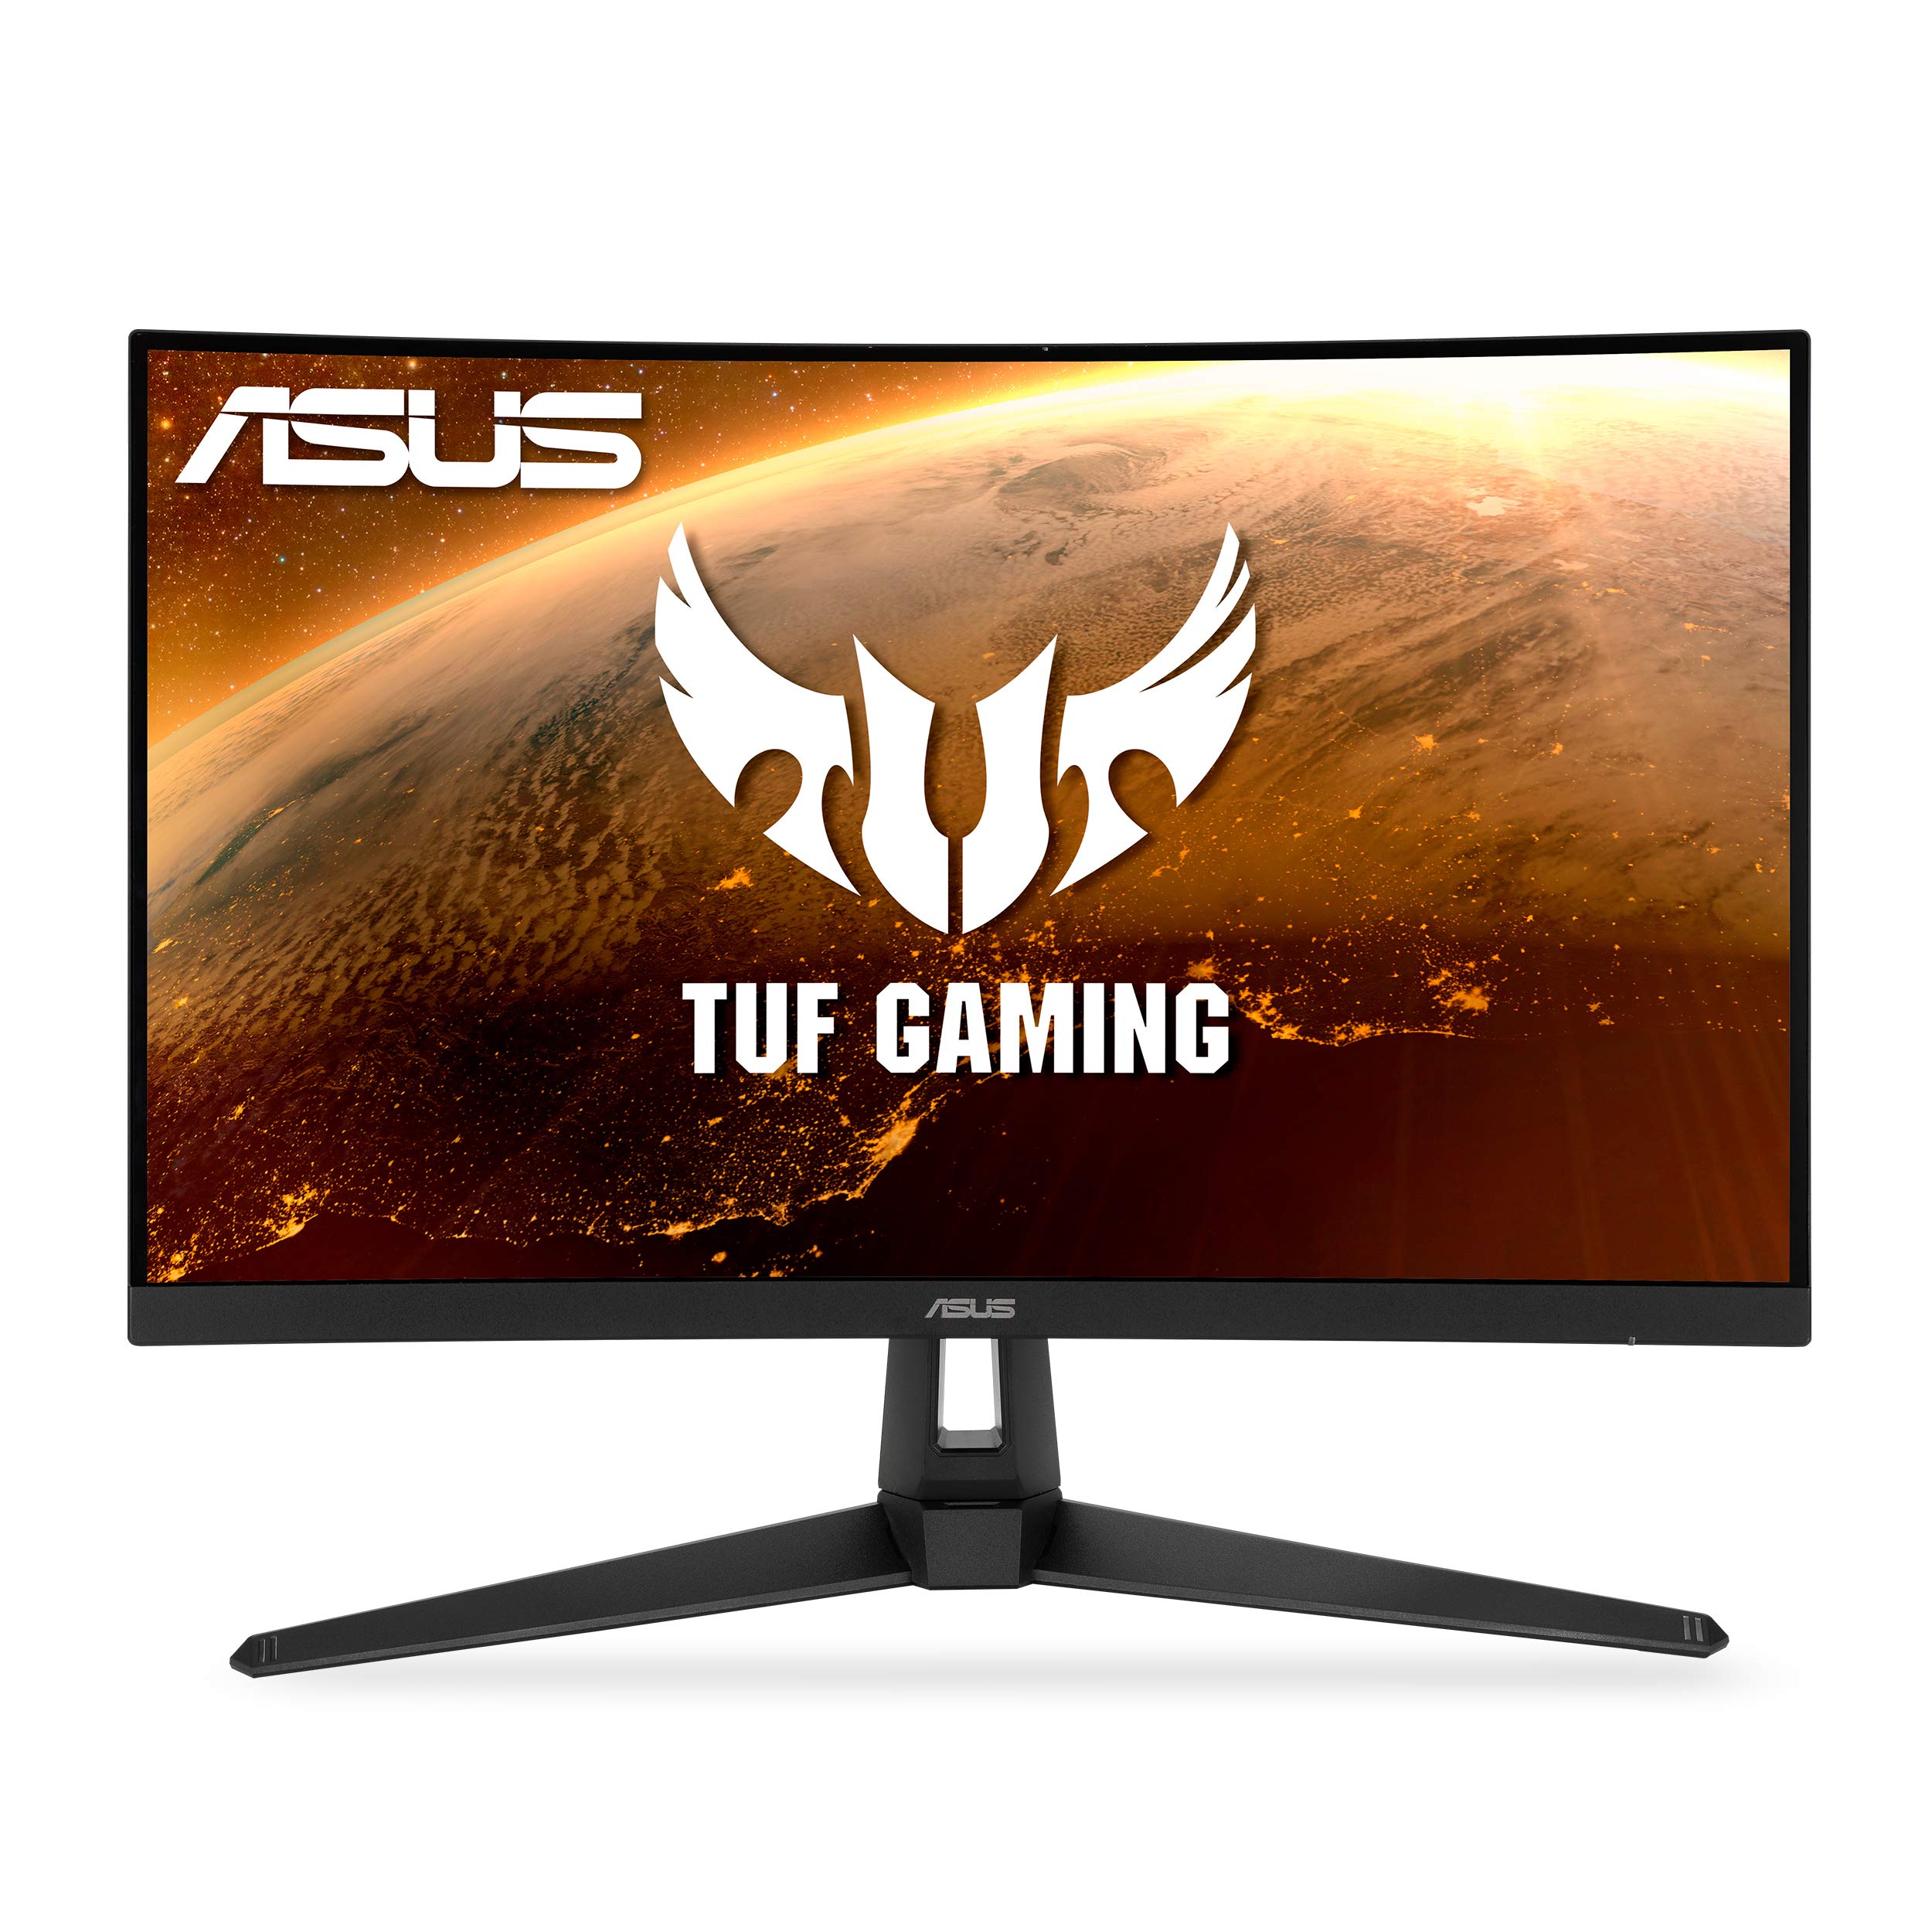 Asus Игровой монитор TUF Gaming 27